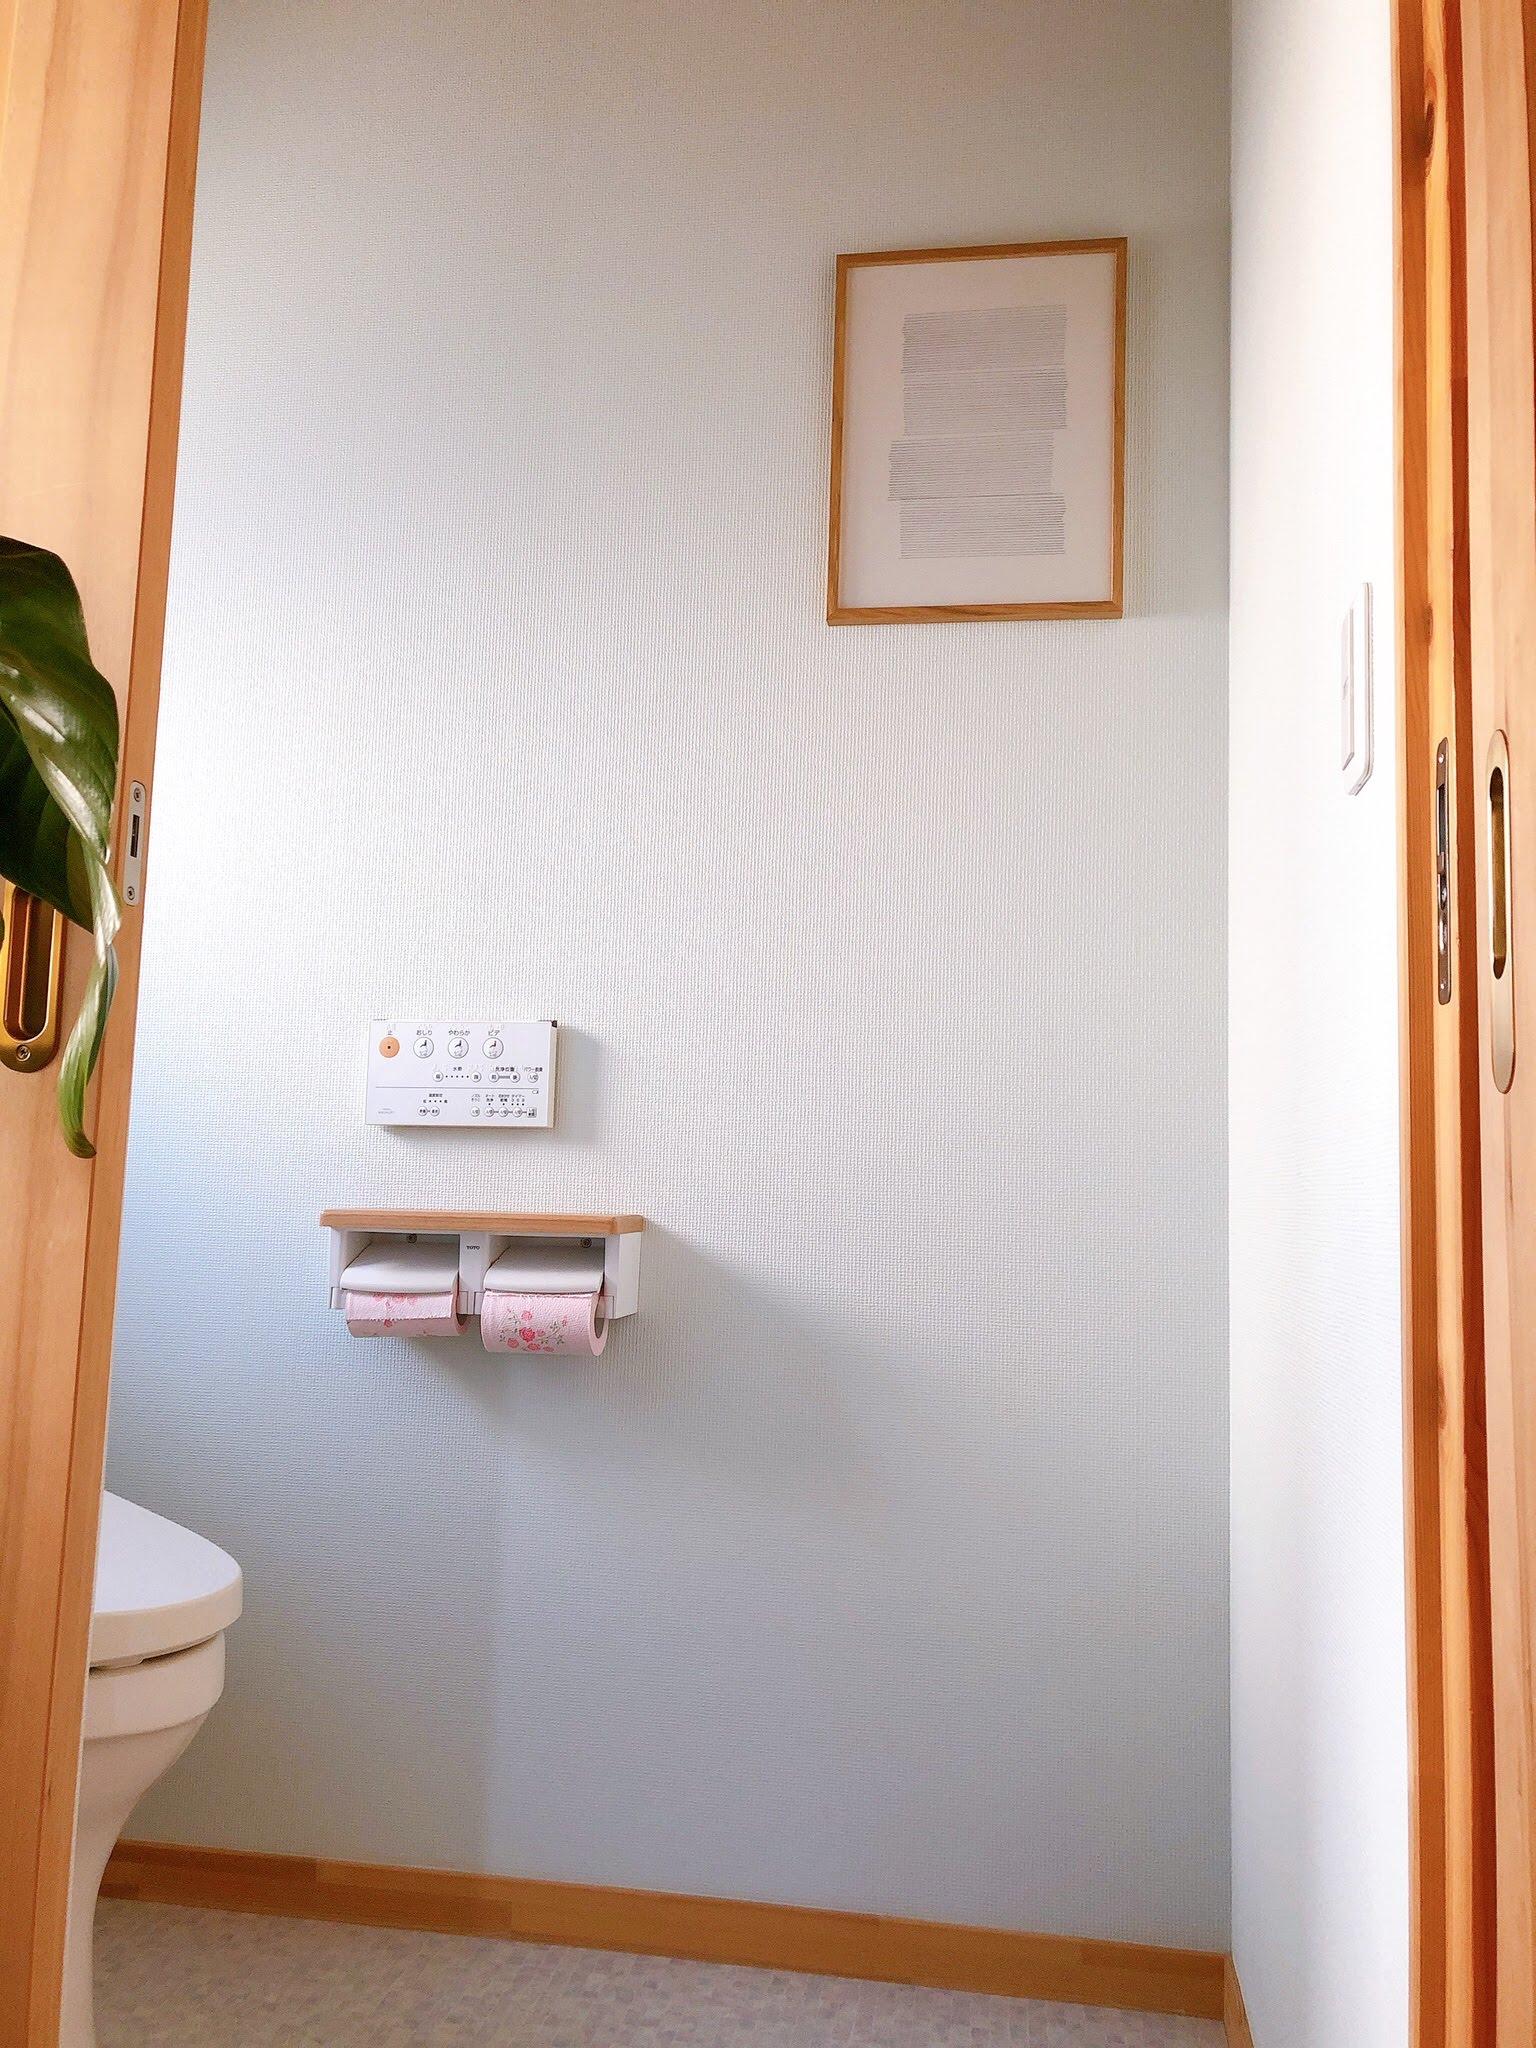 ニコピンフックを使ってポスターパネルを飾る もっと心地よいトイレのインテリア｜FREEQ LIFE フリークライフ